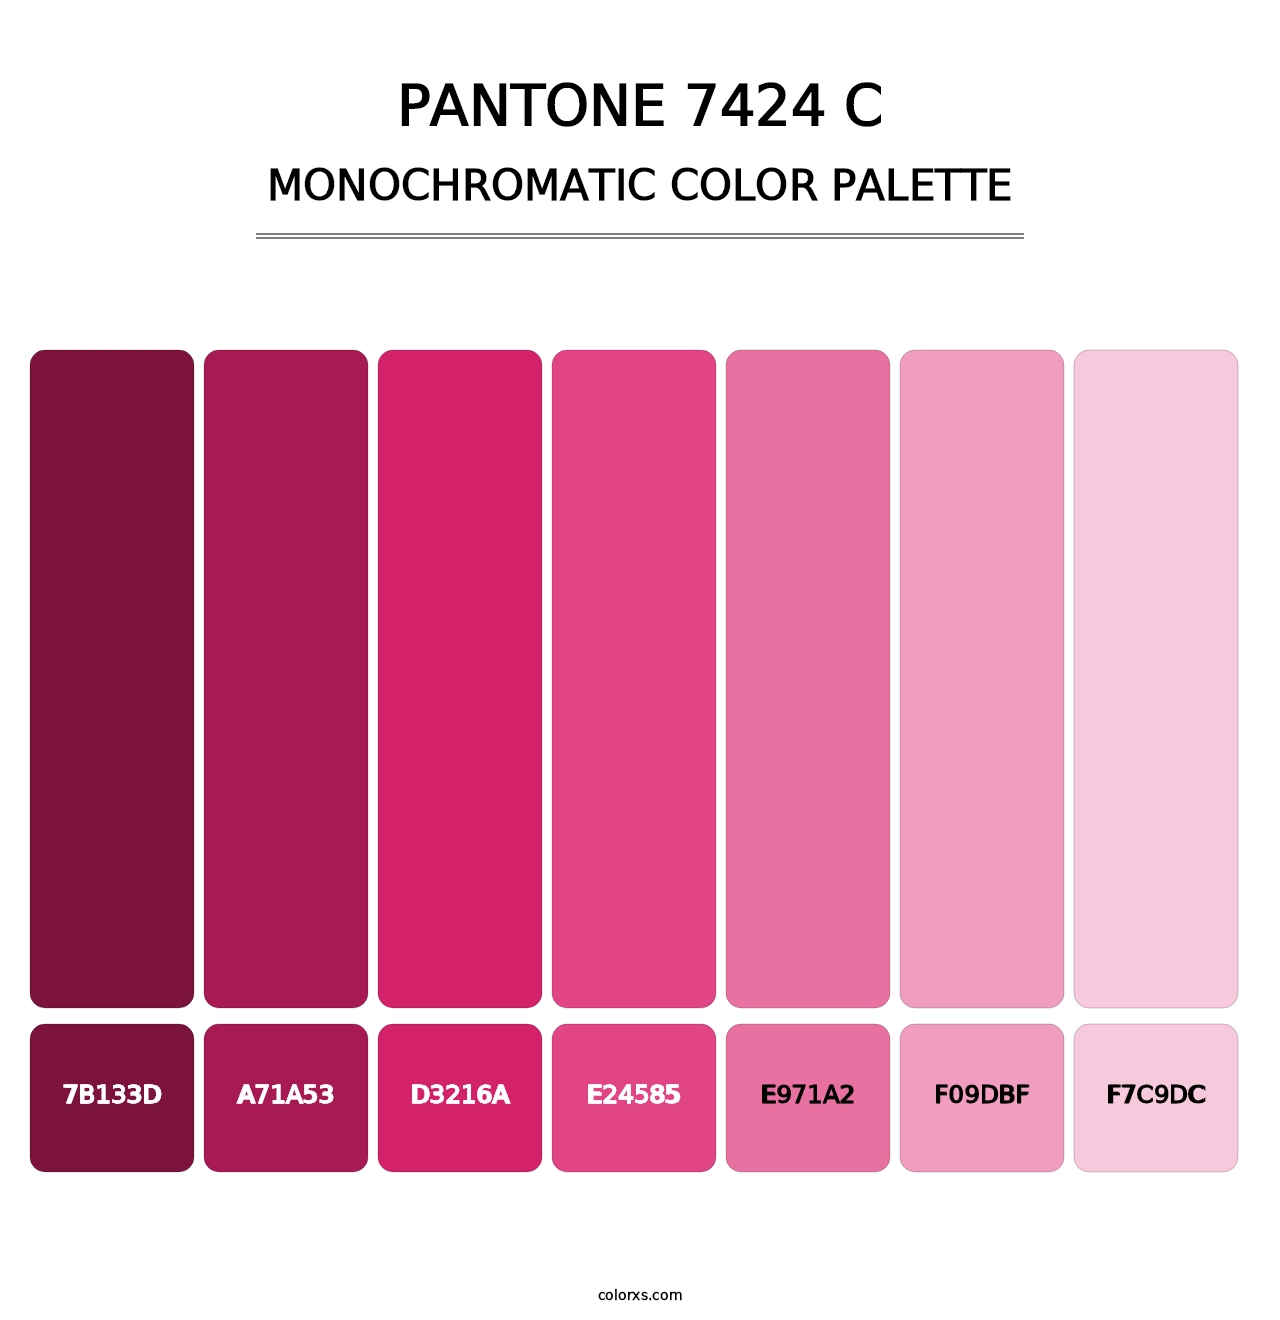 PANTONE 7424 C - Monochromatic Color Palette